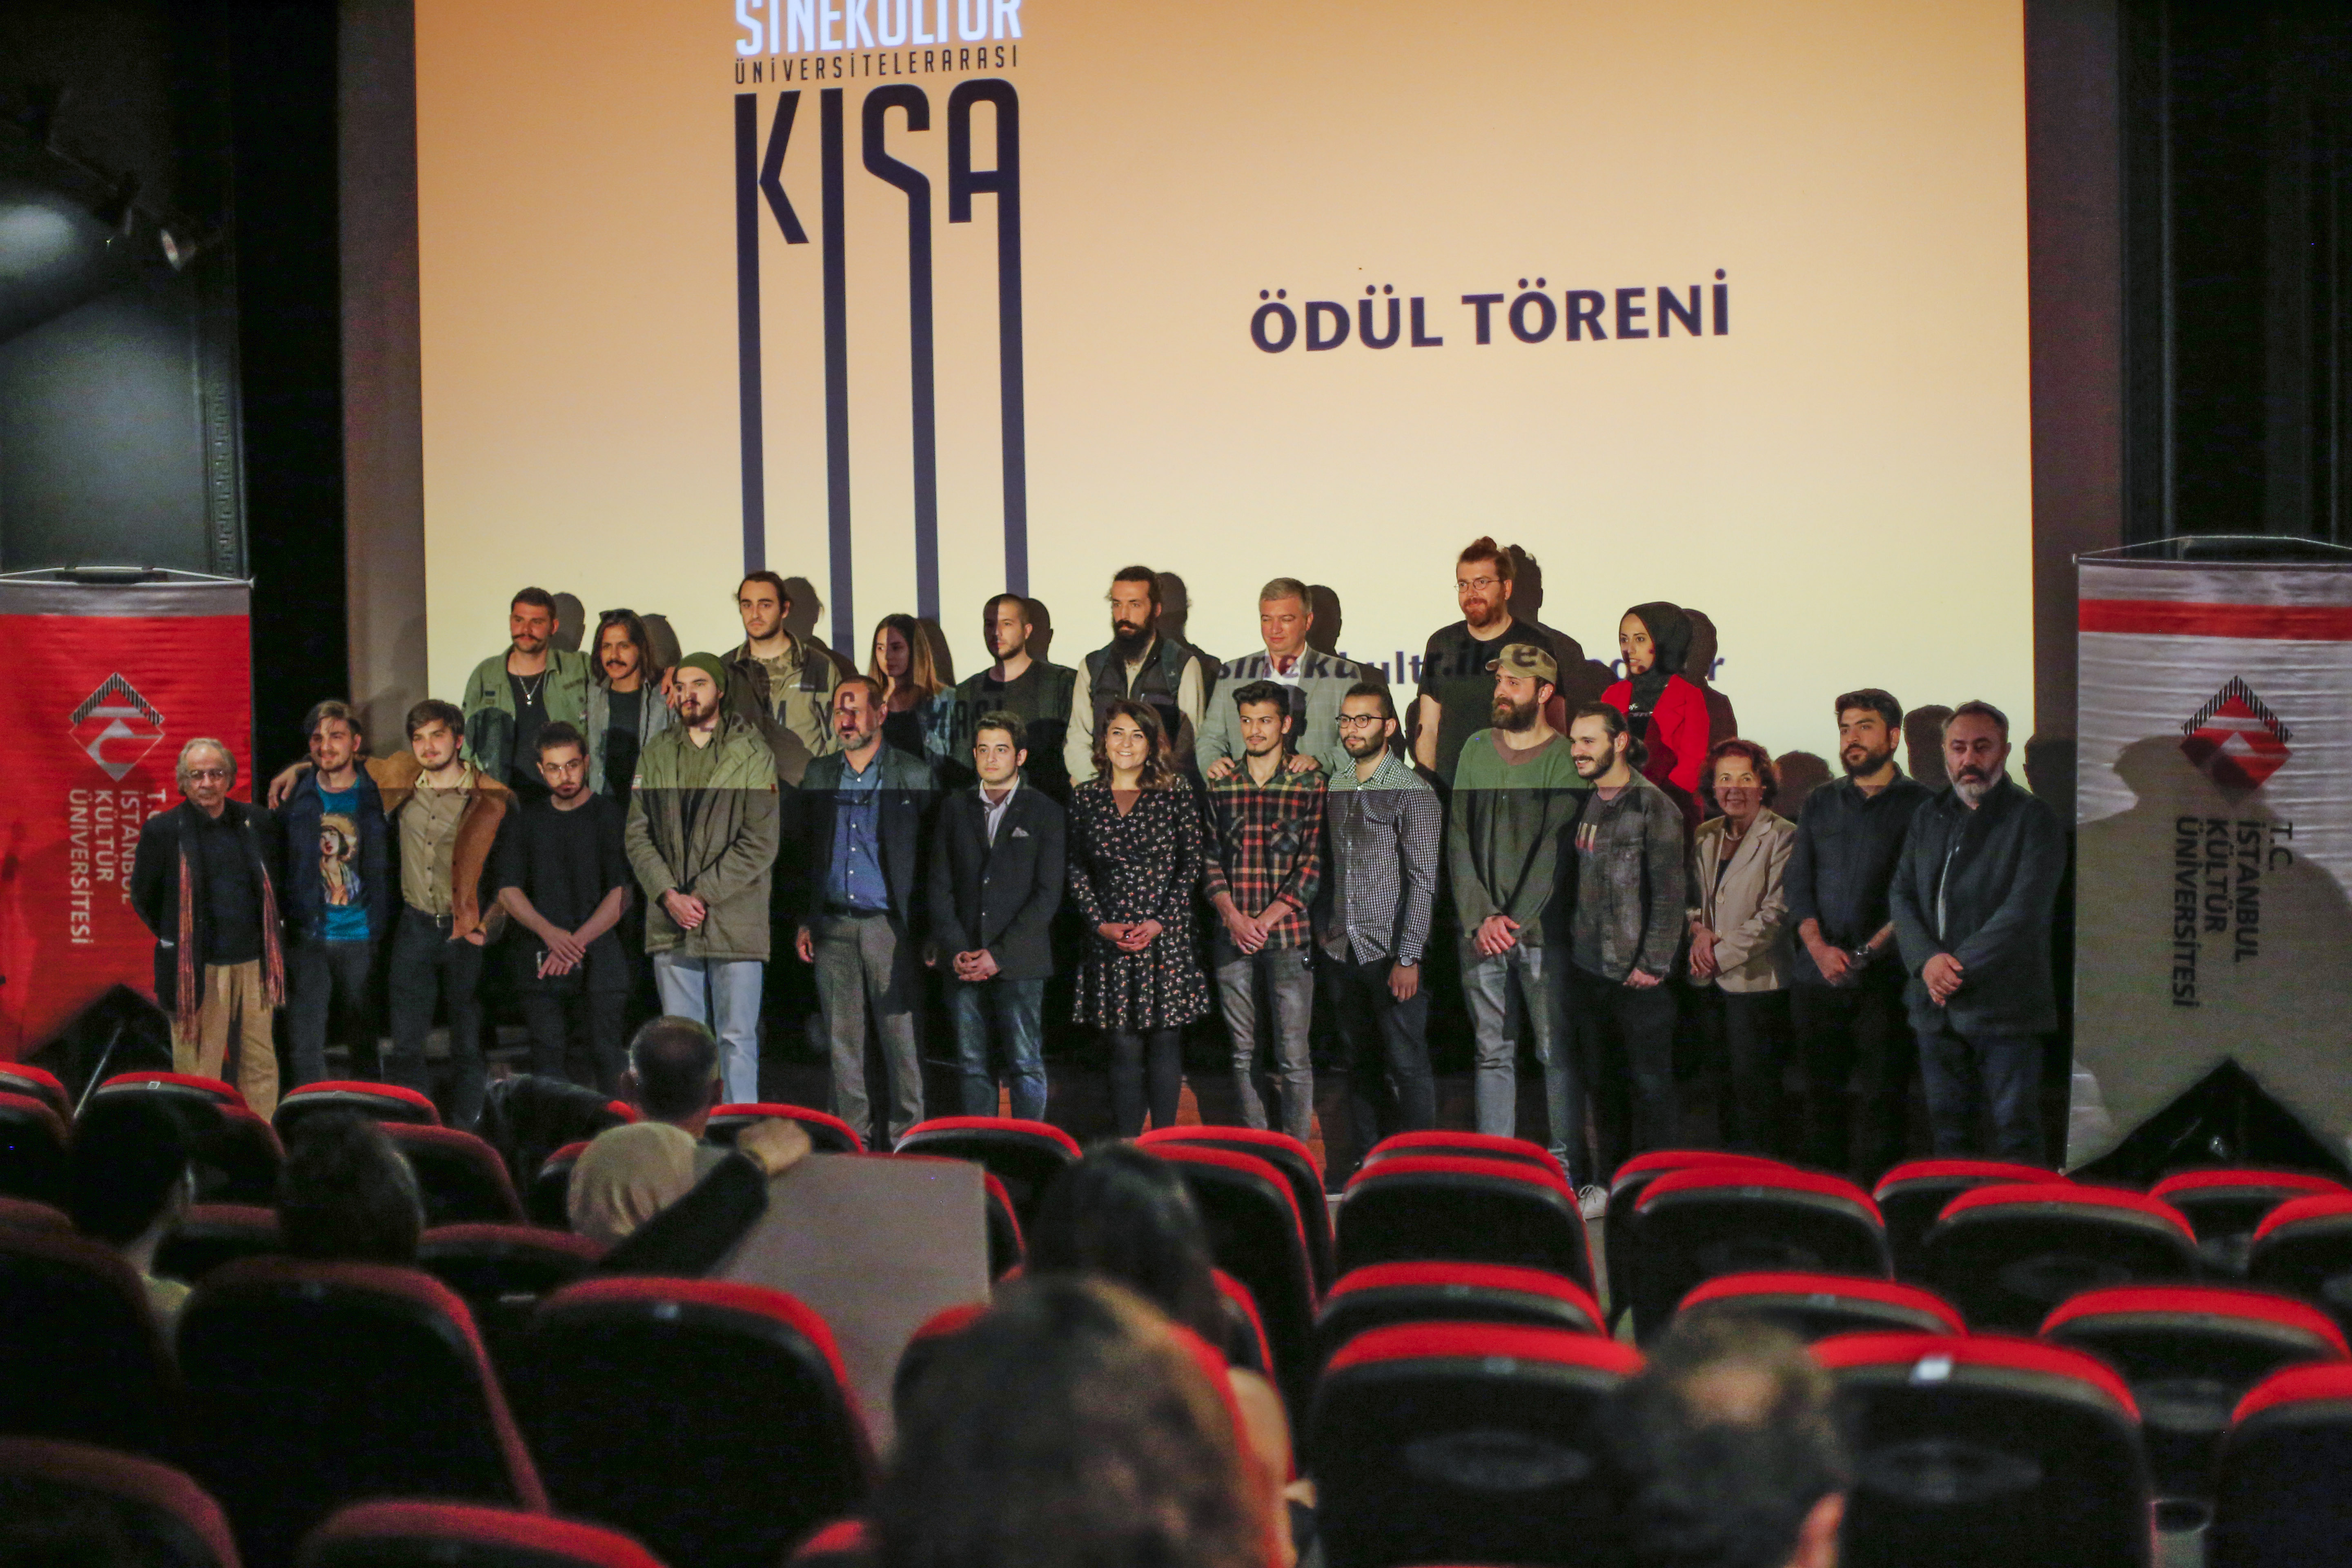 Sinekültür Ünivesitelerarası Kısa Film Yarışması Başvuruları Başladı